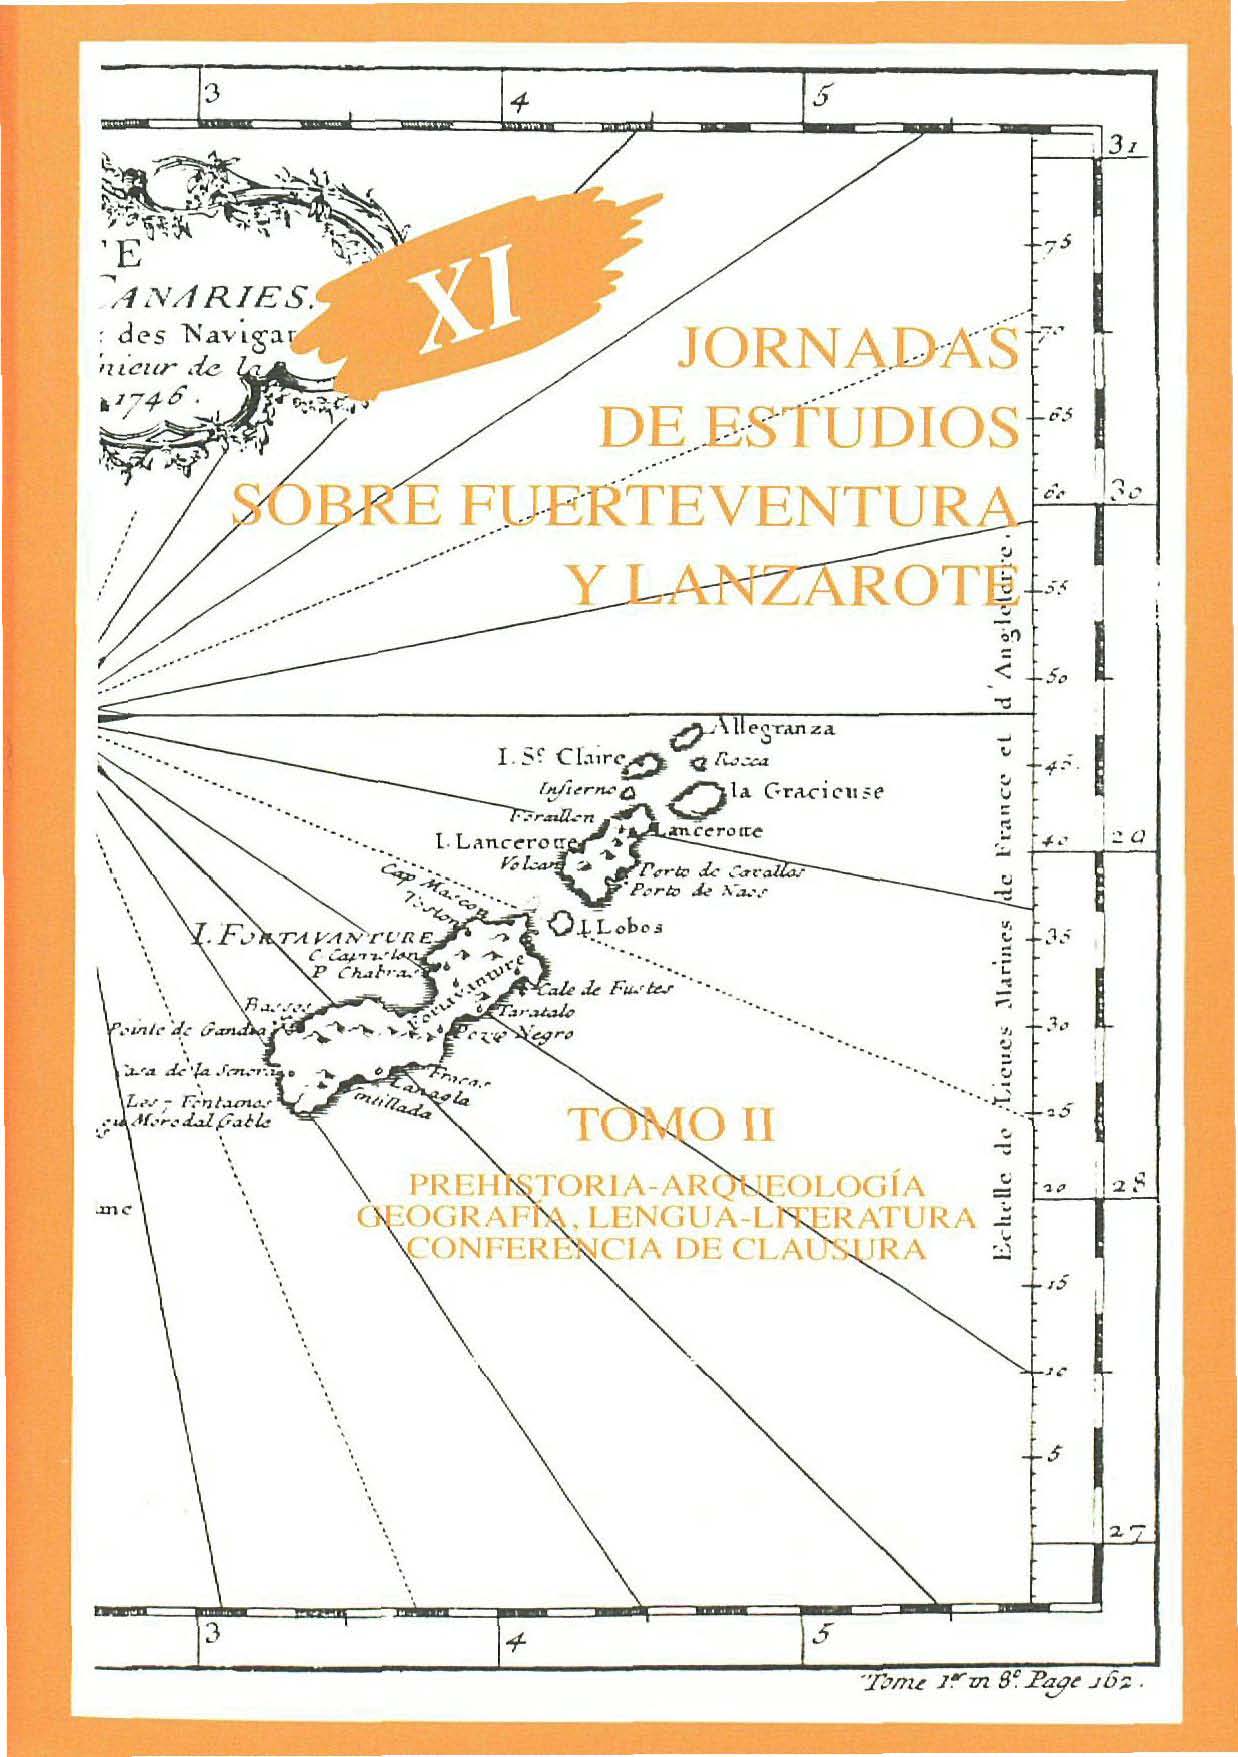 La visión anglosajona sobre Fuerteventura y Lanzarote